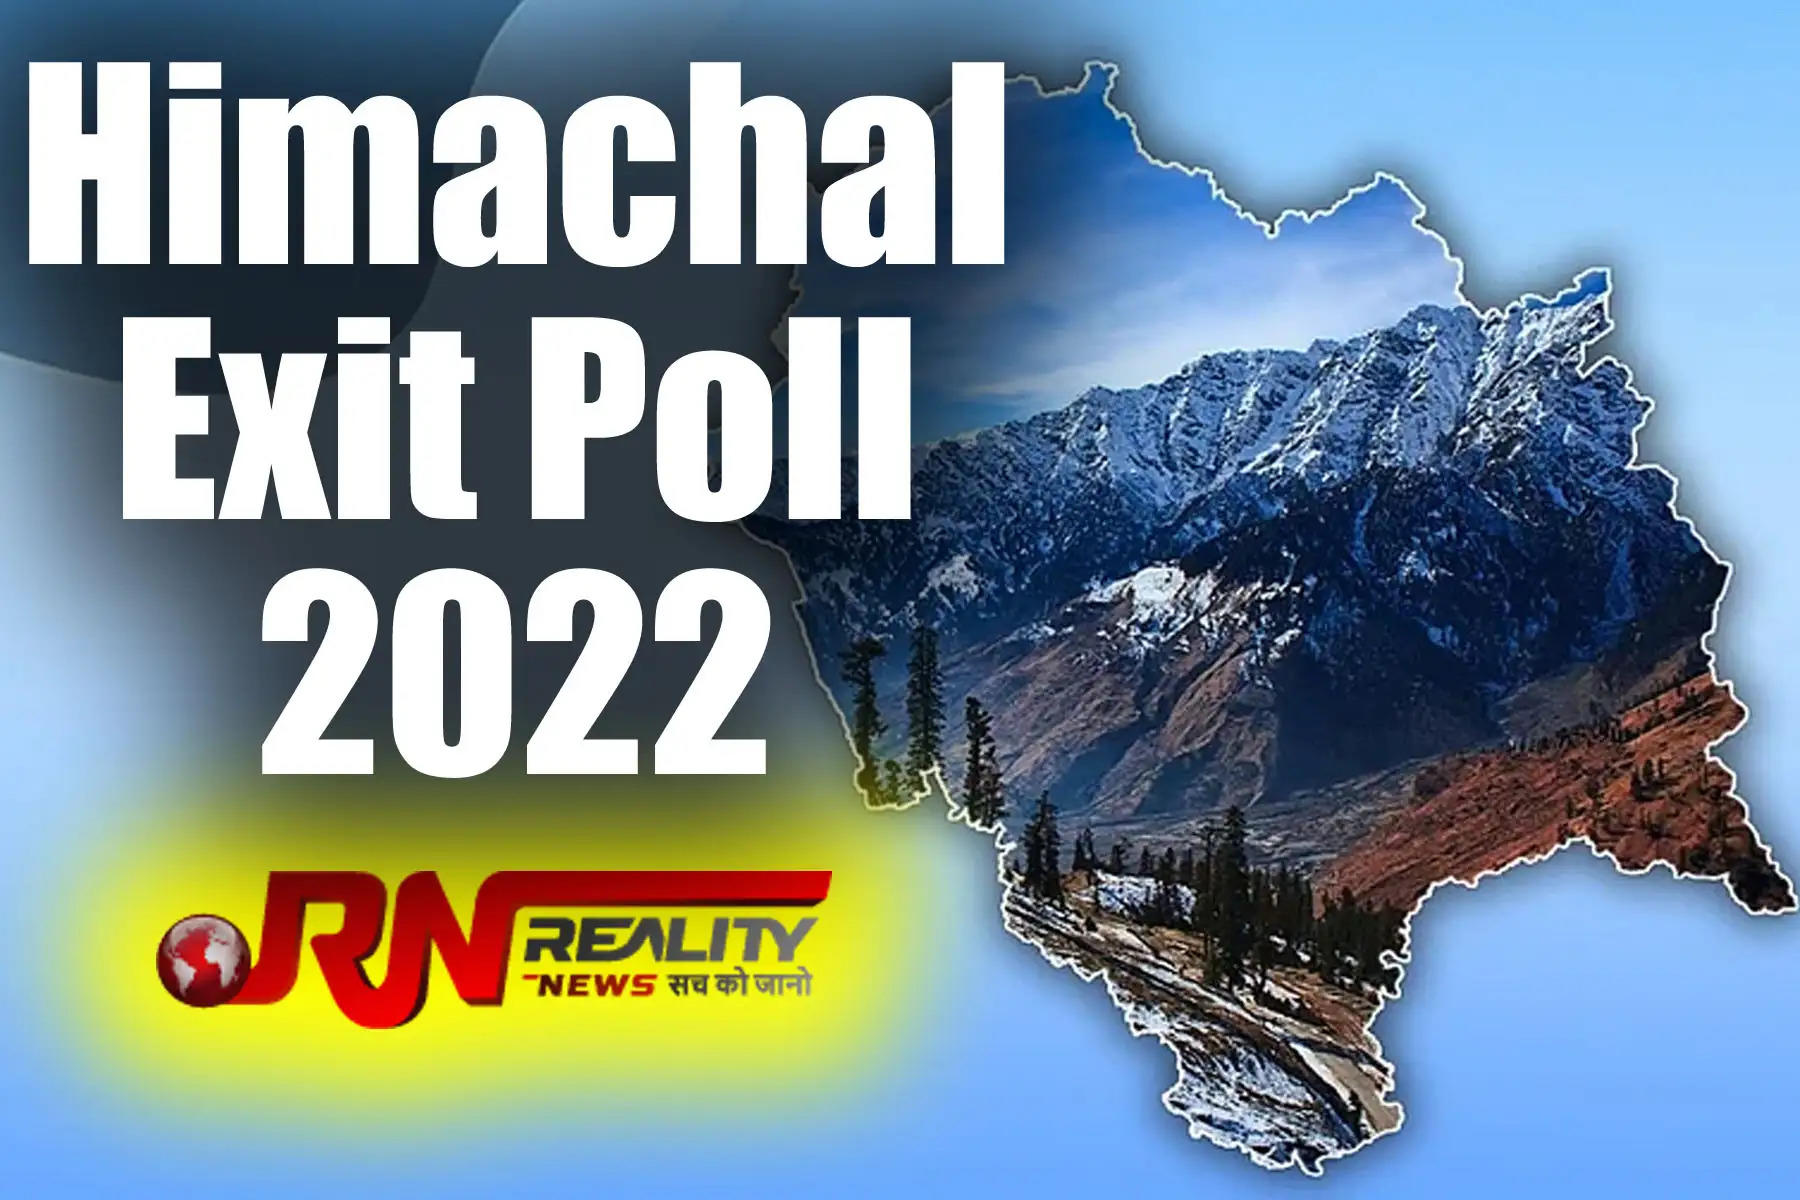 एग्जिट पोल (Himachal Exit Poll 2022) में हिमाचल प्रदेश विधानसभा चुनाव (Himachal Election) में भाजपा और कांग्रेस (BJP-Congress) के बीच कांटे की टक्कर दिख रही है। हालांकि, कुछ चैनल भाजपा को बढ़त भी दिखा रहे हैं। अभी तक जो सर्वे जारी किए गए हैं, उनके अनुसार हिमाचल में मुकाबला सबसे रोचक होने वाला है।